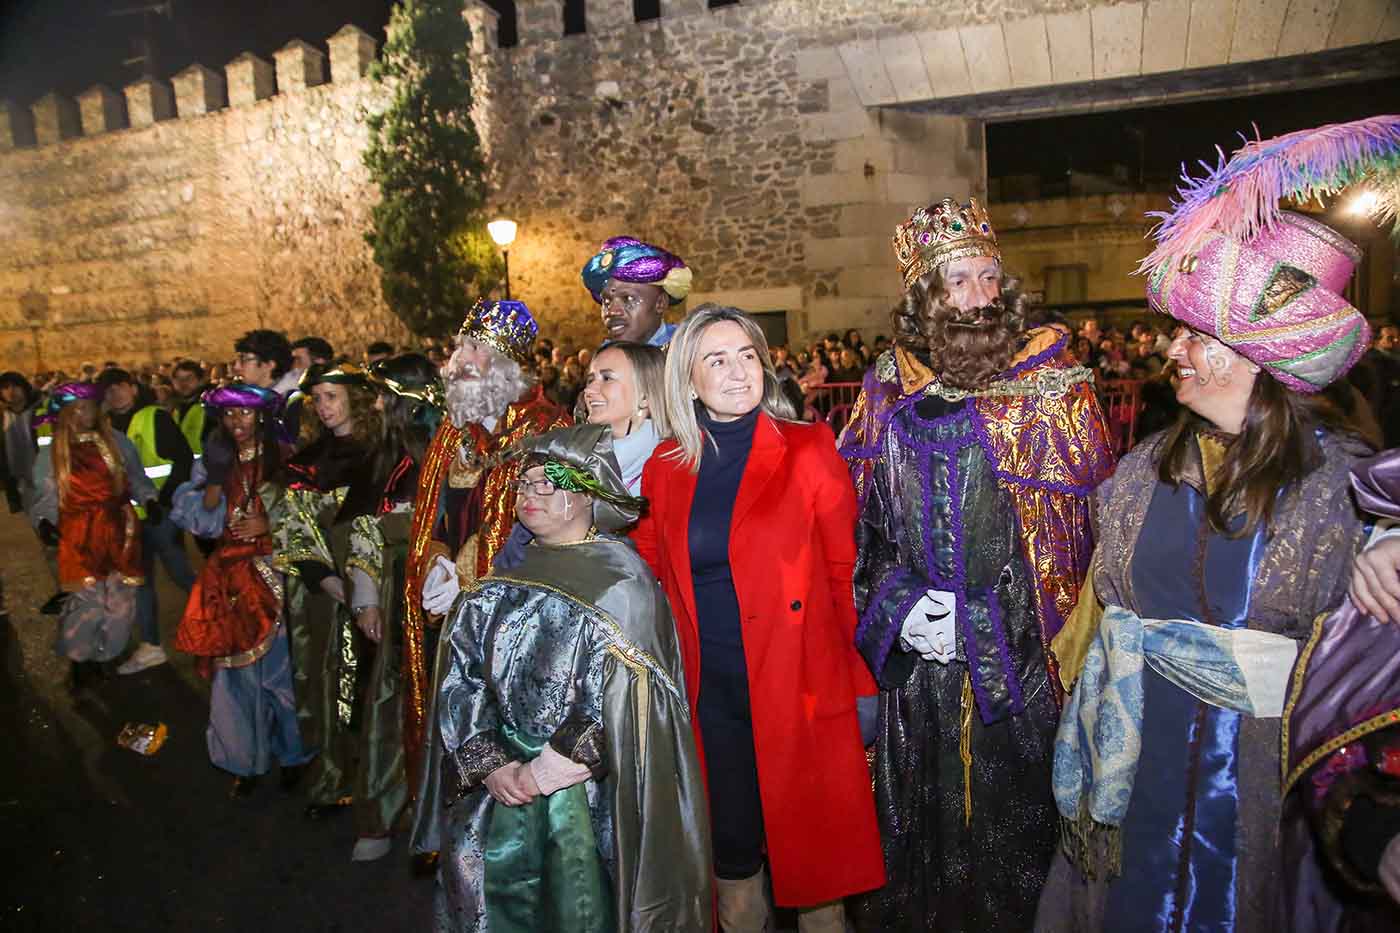 La alcaldesa entrega la llave de la ciudad de Toledo a los Reyes Magos, tras una multitudinaria Cabalga por las calles de la capital regional.